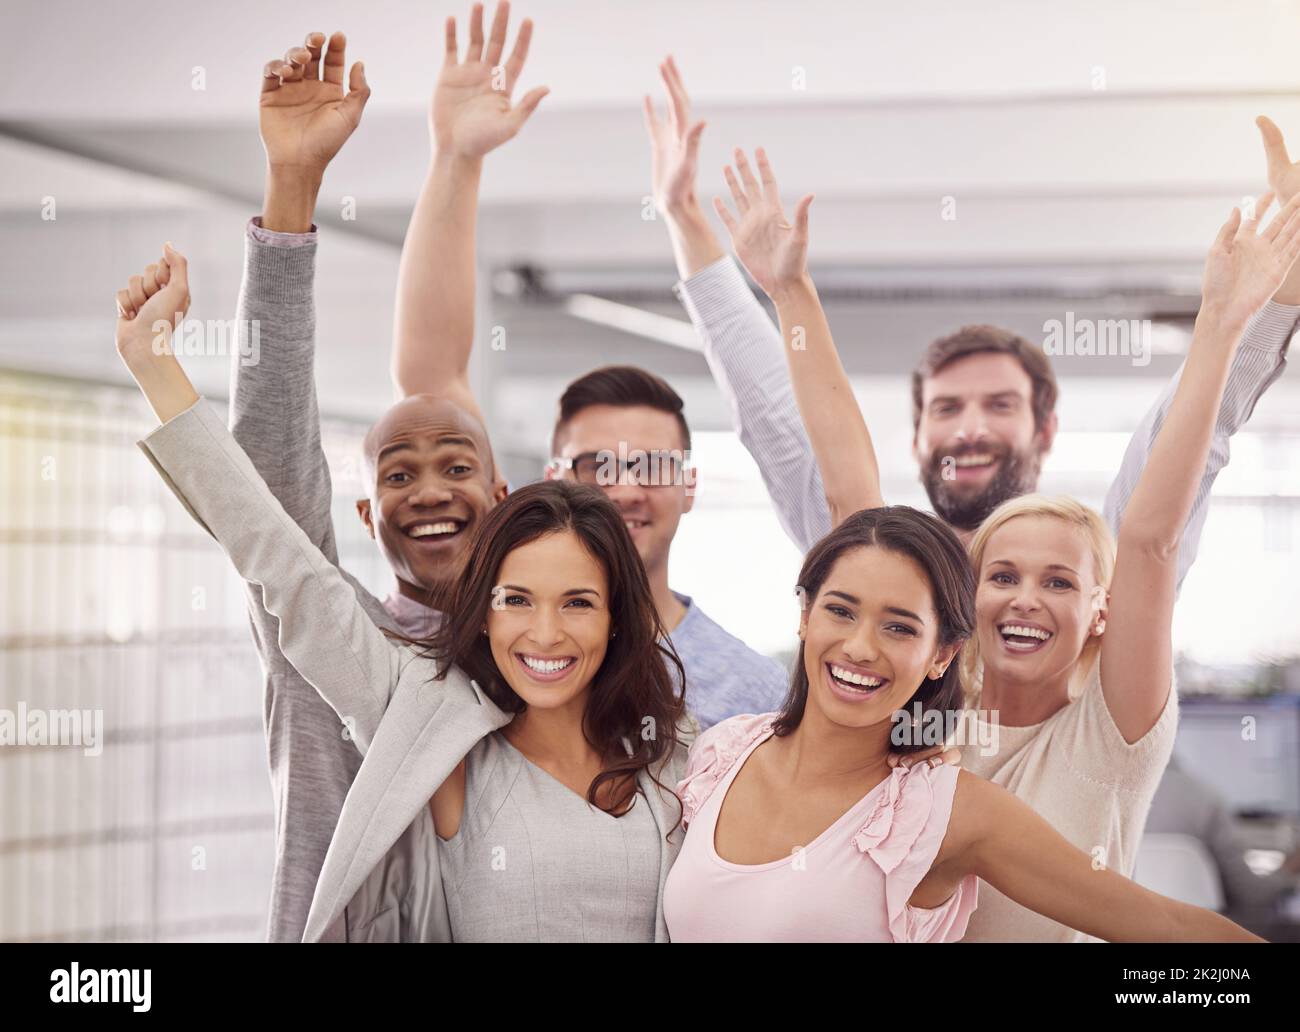 Triff das Dream Team. Beschnittenes Porträt eines enthusiastischen Geschäftsteams, das mit erhobenen Armen steht. Stockfoto